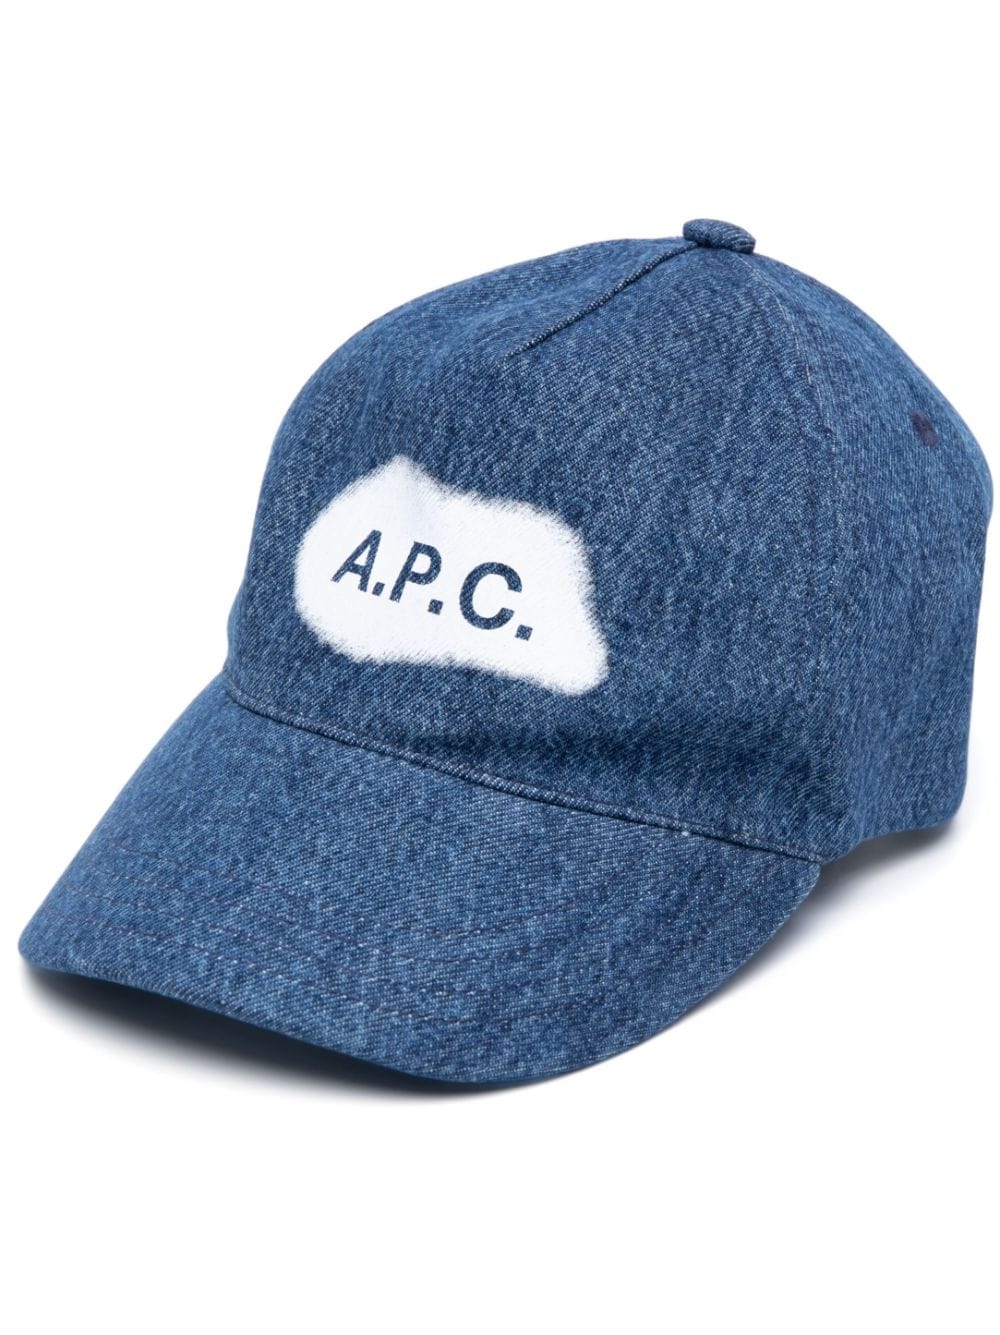 A.P.C. logo-print denim baseball cap - Blue von A.P.C.